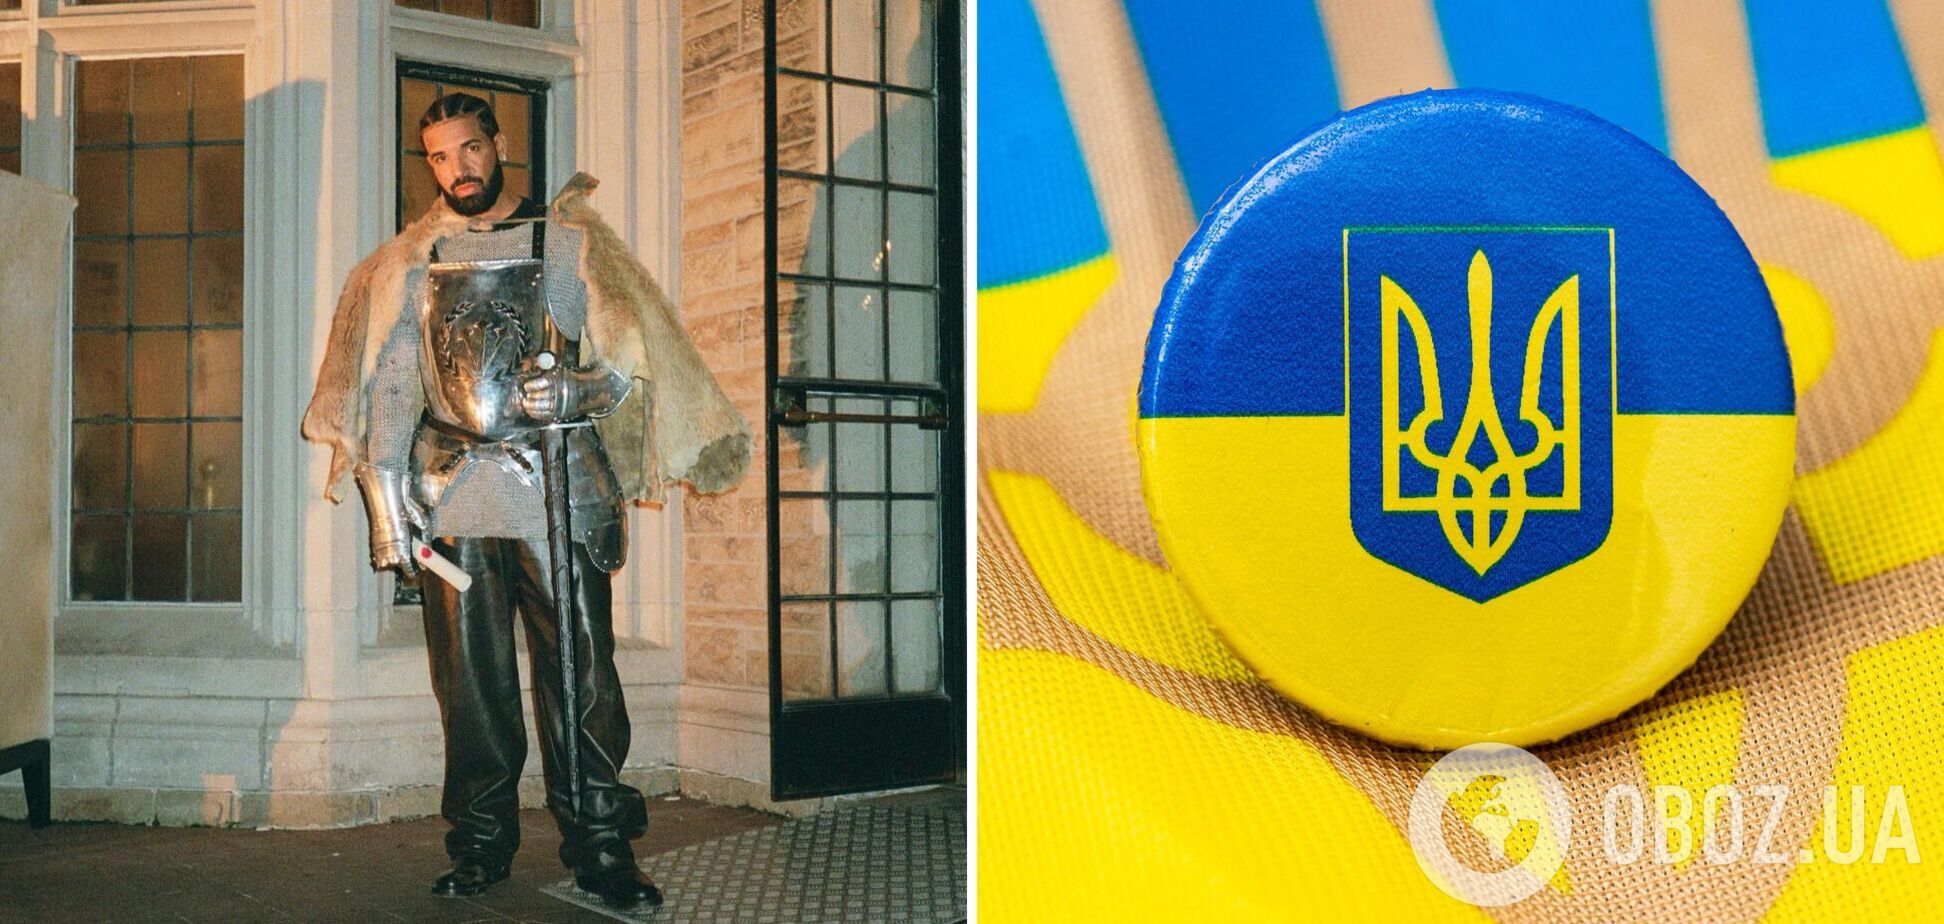 Дрейк снялся в клипе с паляницей и гербом Украины. Фото